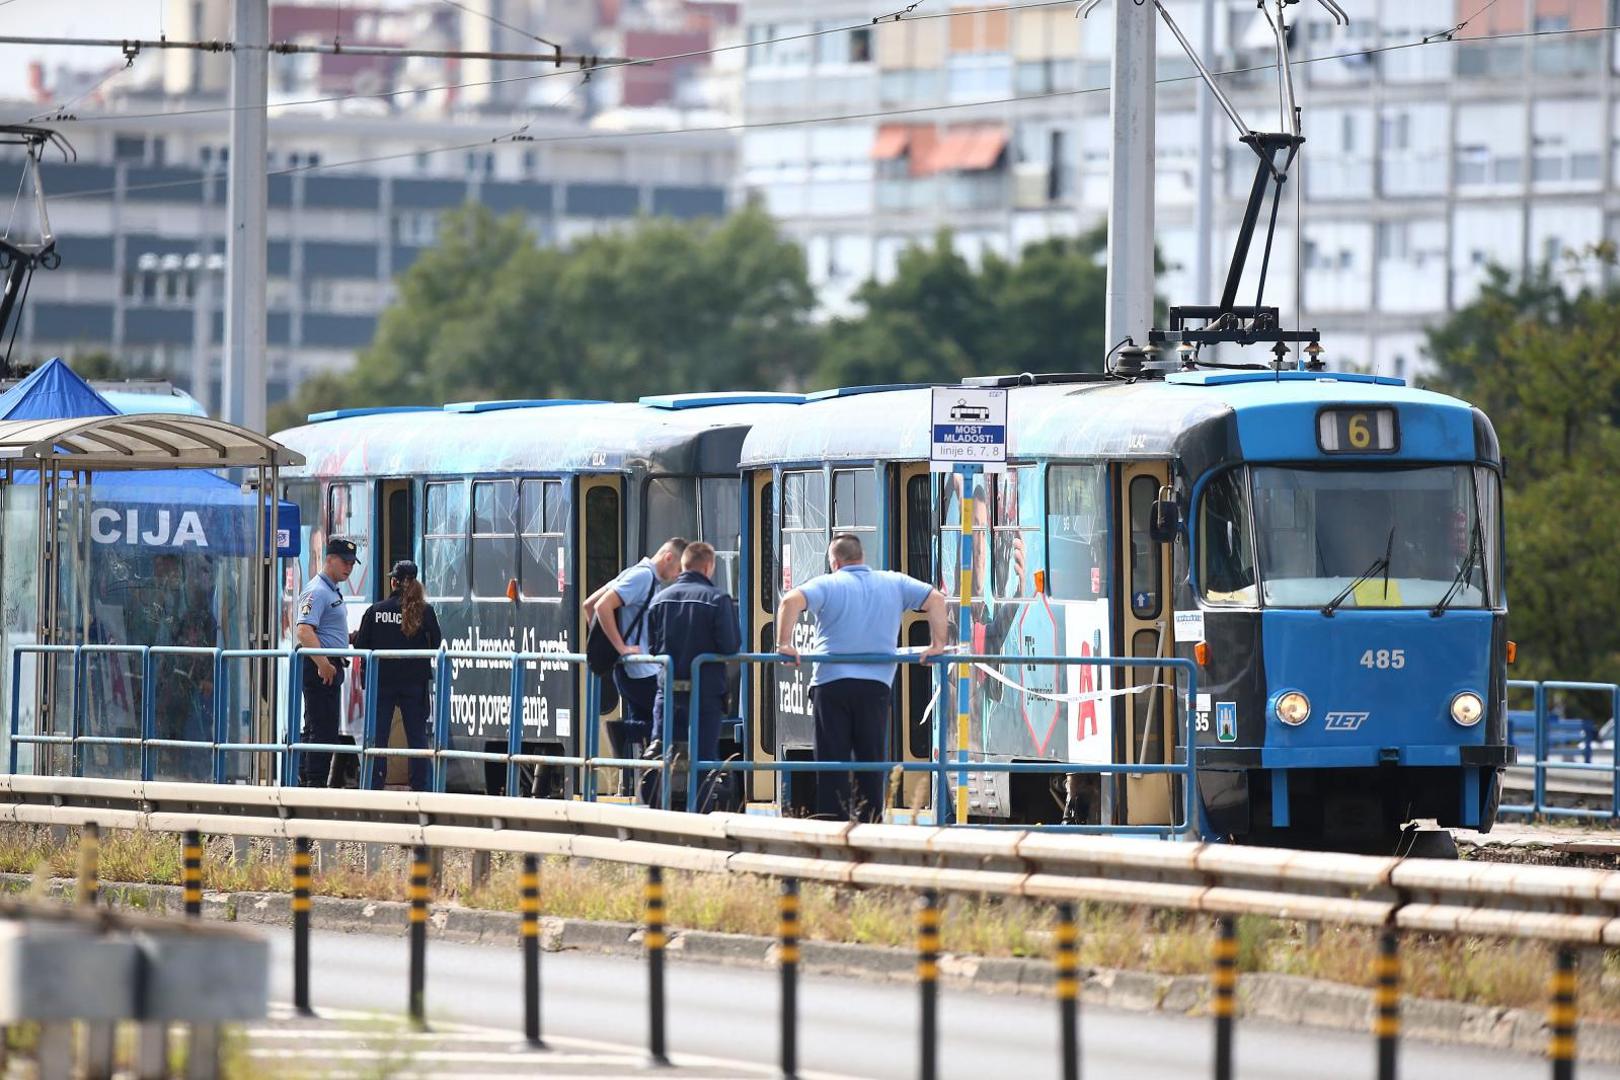 18.09.2021., Zagreb - U ZET-ovom tramvaju na mostu Mladosti pronadjeno bezivotno tijelo muskarca, ocevid u tijeku.

Photo: Matija Habljak/PIXSELL